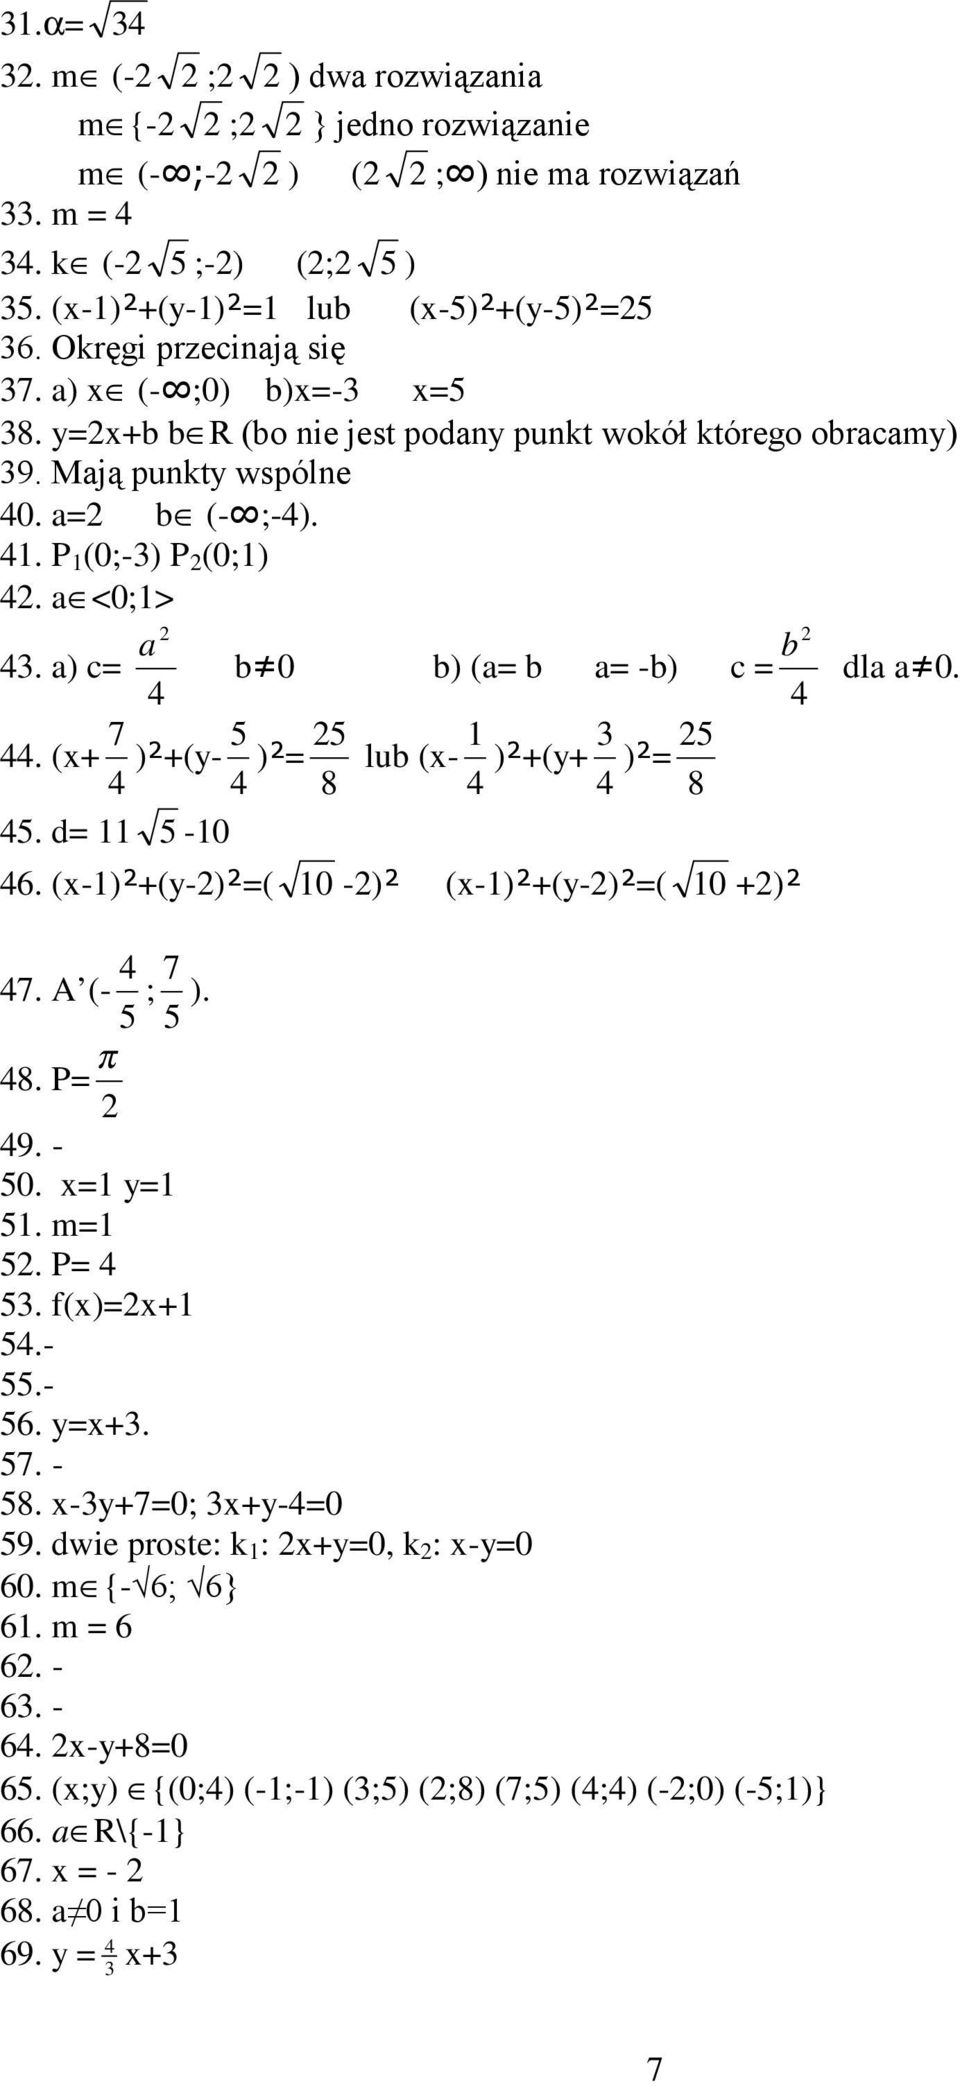 a) c= 4 b b 0 b) (a= b a= -b) c = 4 44. (x+ 4 7 )²+(y- 4 5 )²= 8 5 lub (x- 4 )²+(y+ 4 3 )²= 8 5 45. d= 5-0 46. (x-)²+(y-)²=( 0 -)² (x-)²+(y-)²=( 0 +)² dla a 0. 47. A (- 5 4 ; 5 7 ). 48. P= π 49. - 50.